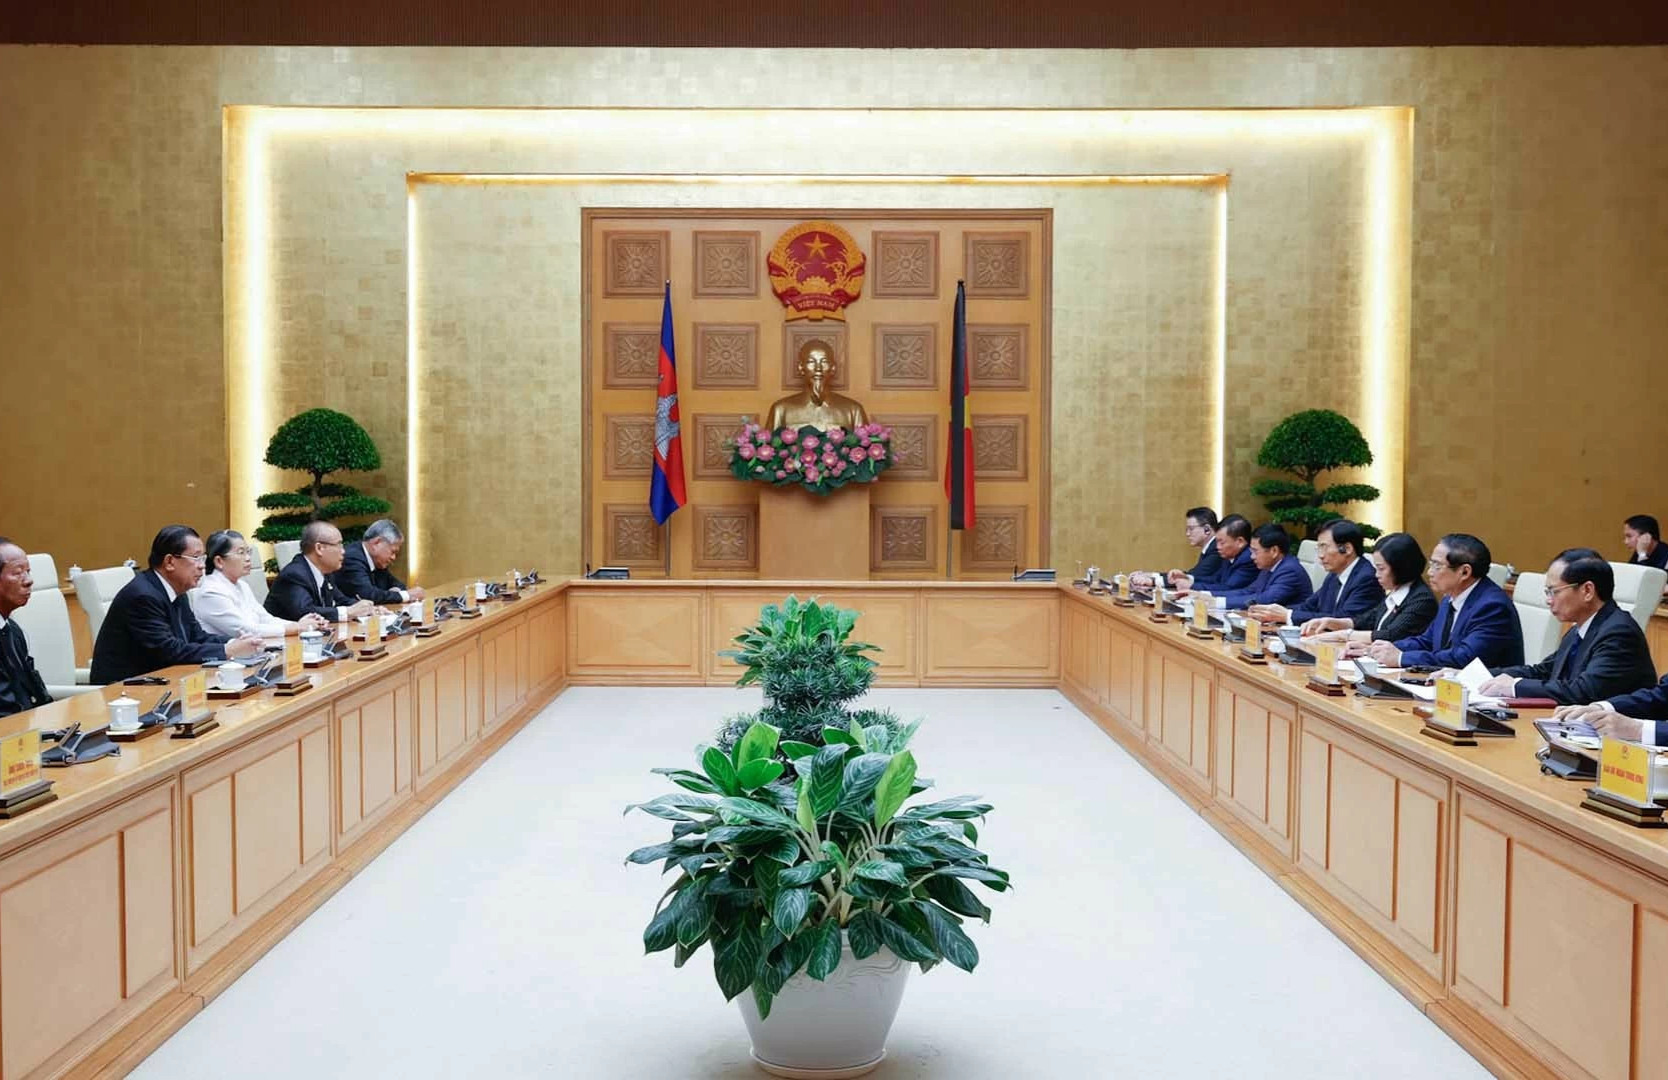 Tiếp tục củng cố và tăng cường sự gắn bó, tin cậy chính trị giữa hai Đảng, hai Nhà nước Việt Nam và Campuchia